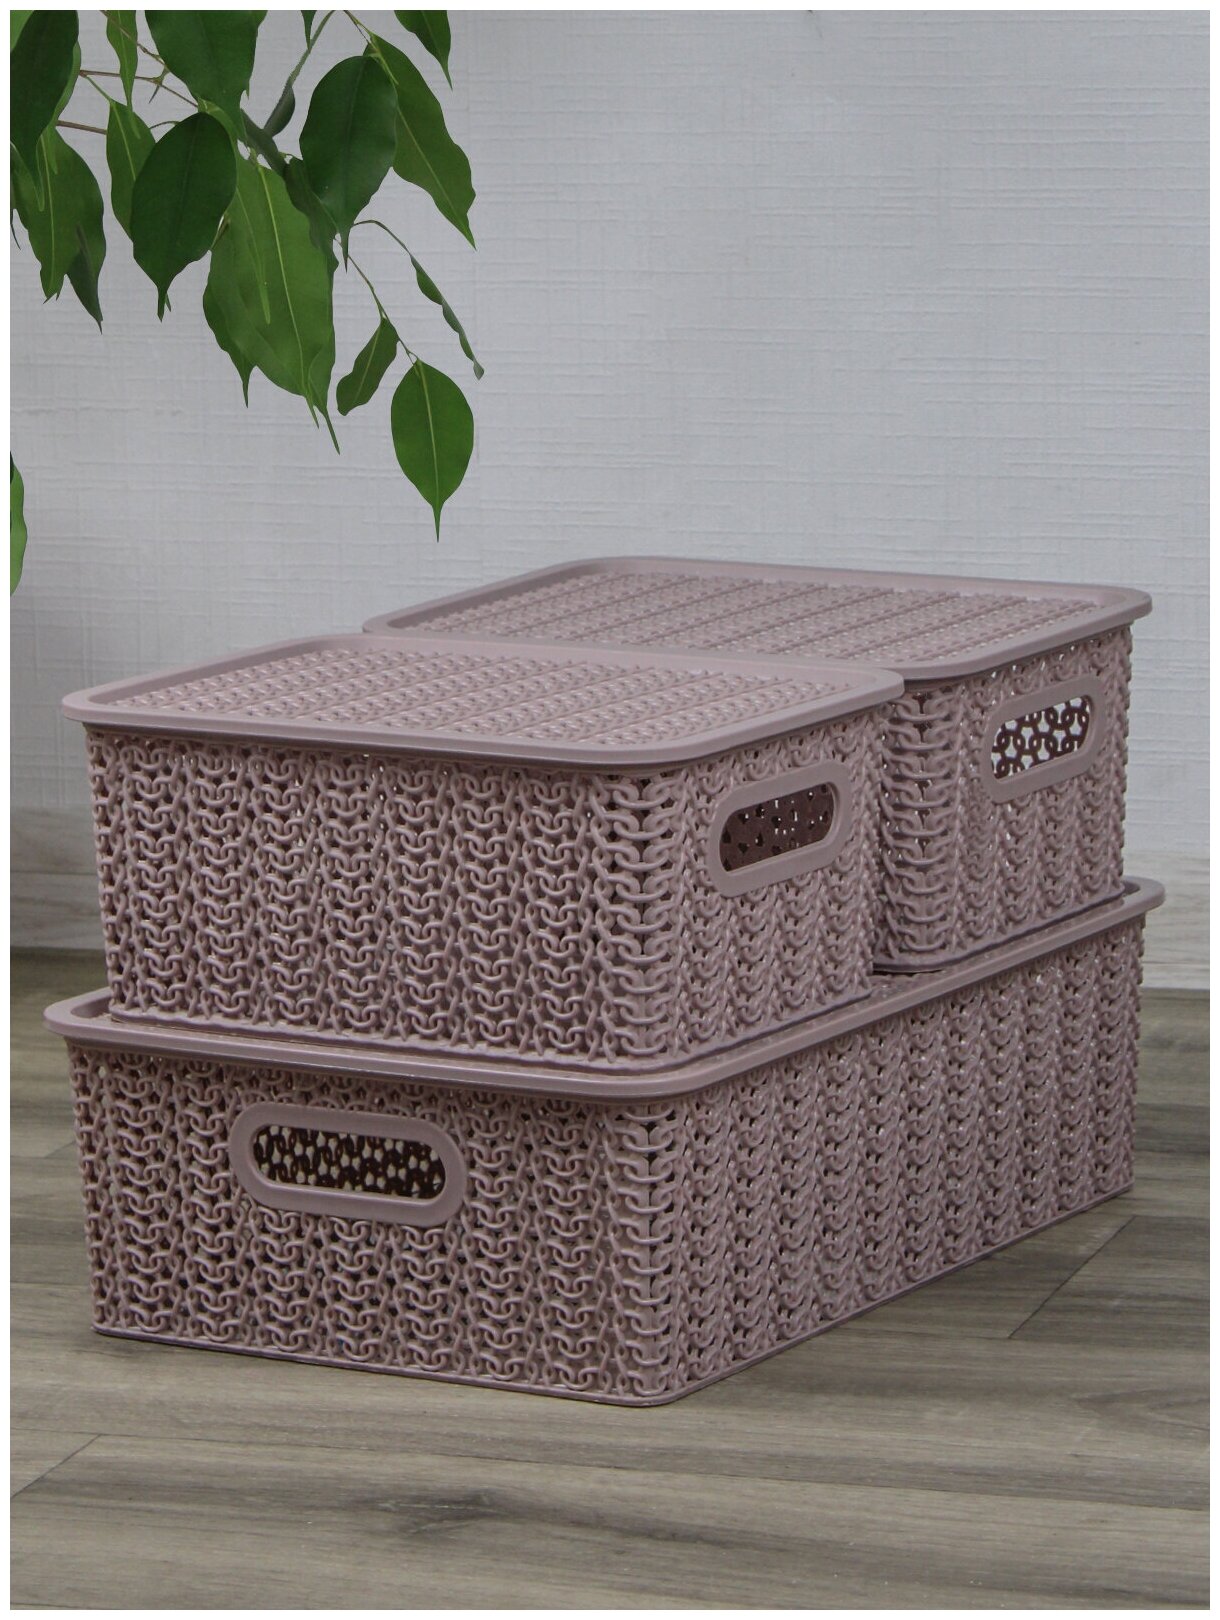 Набор из 3 корзин для хранения Вязь с крышкой 7,5л - 1 шт, 3л - 2 шт / контейнер / хозяйственная коробка, цвет розовый нюд - фотография № 1